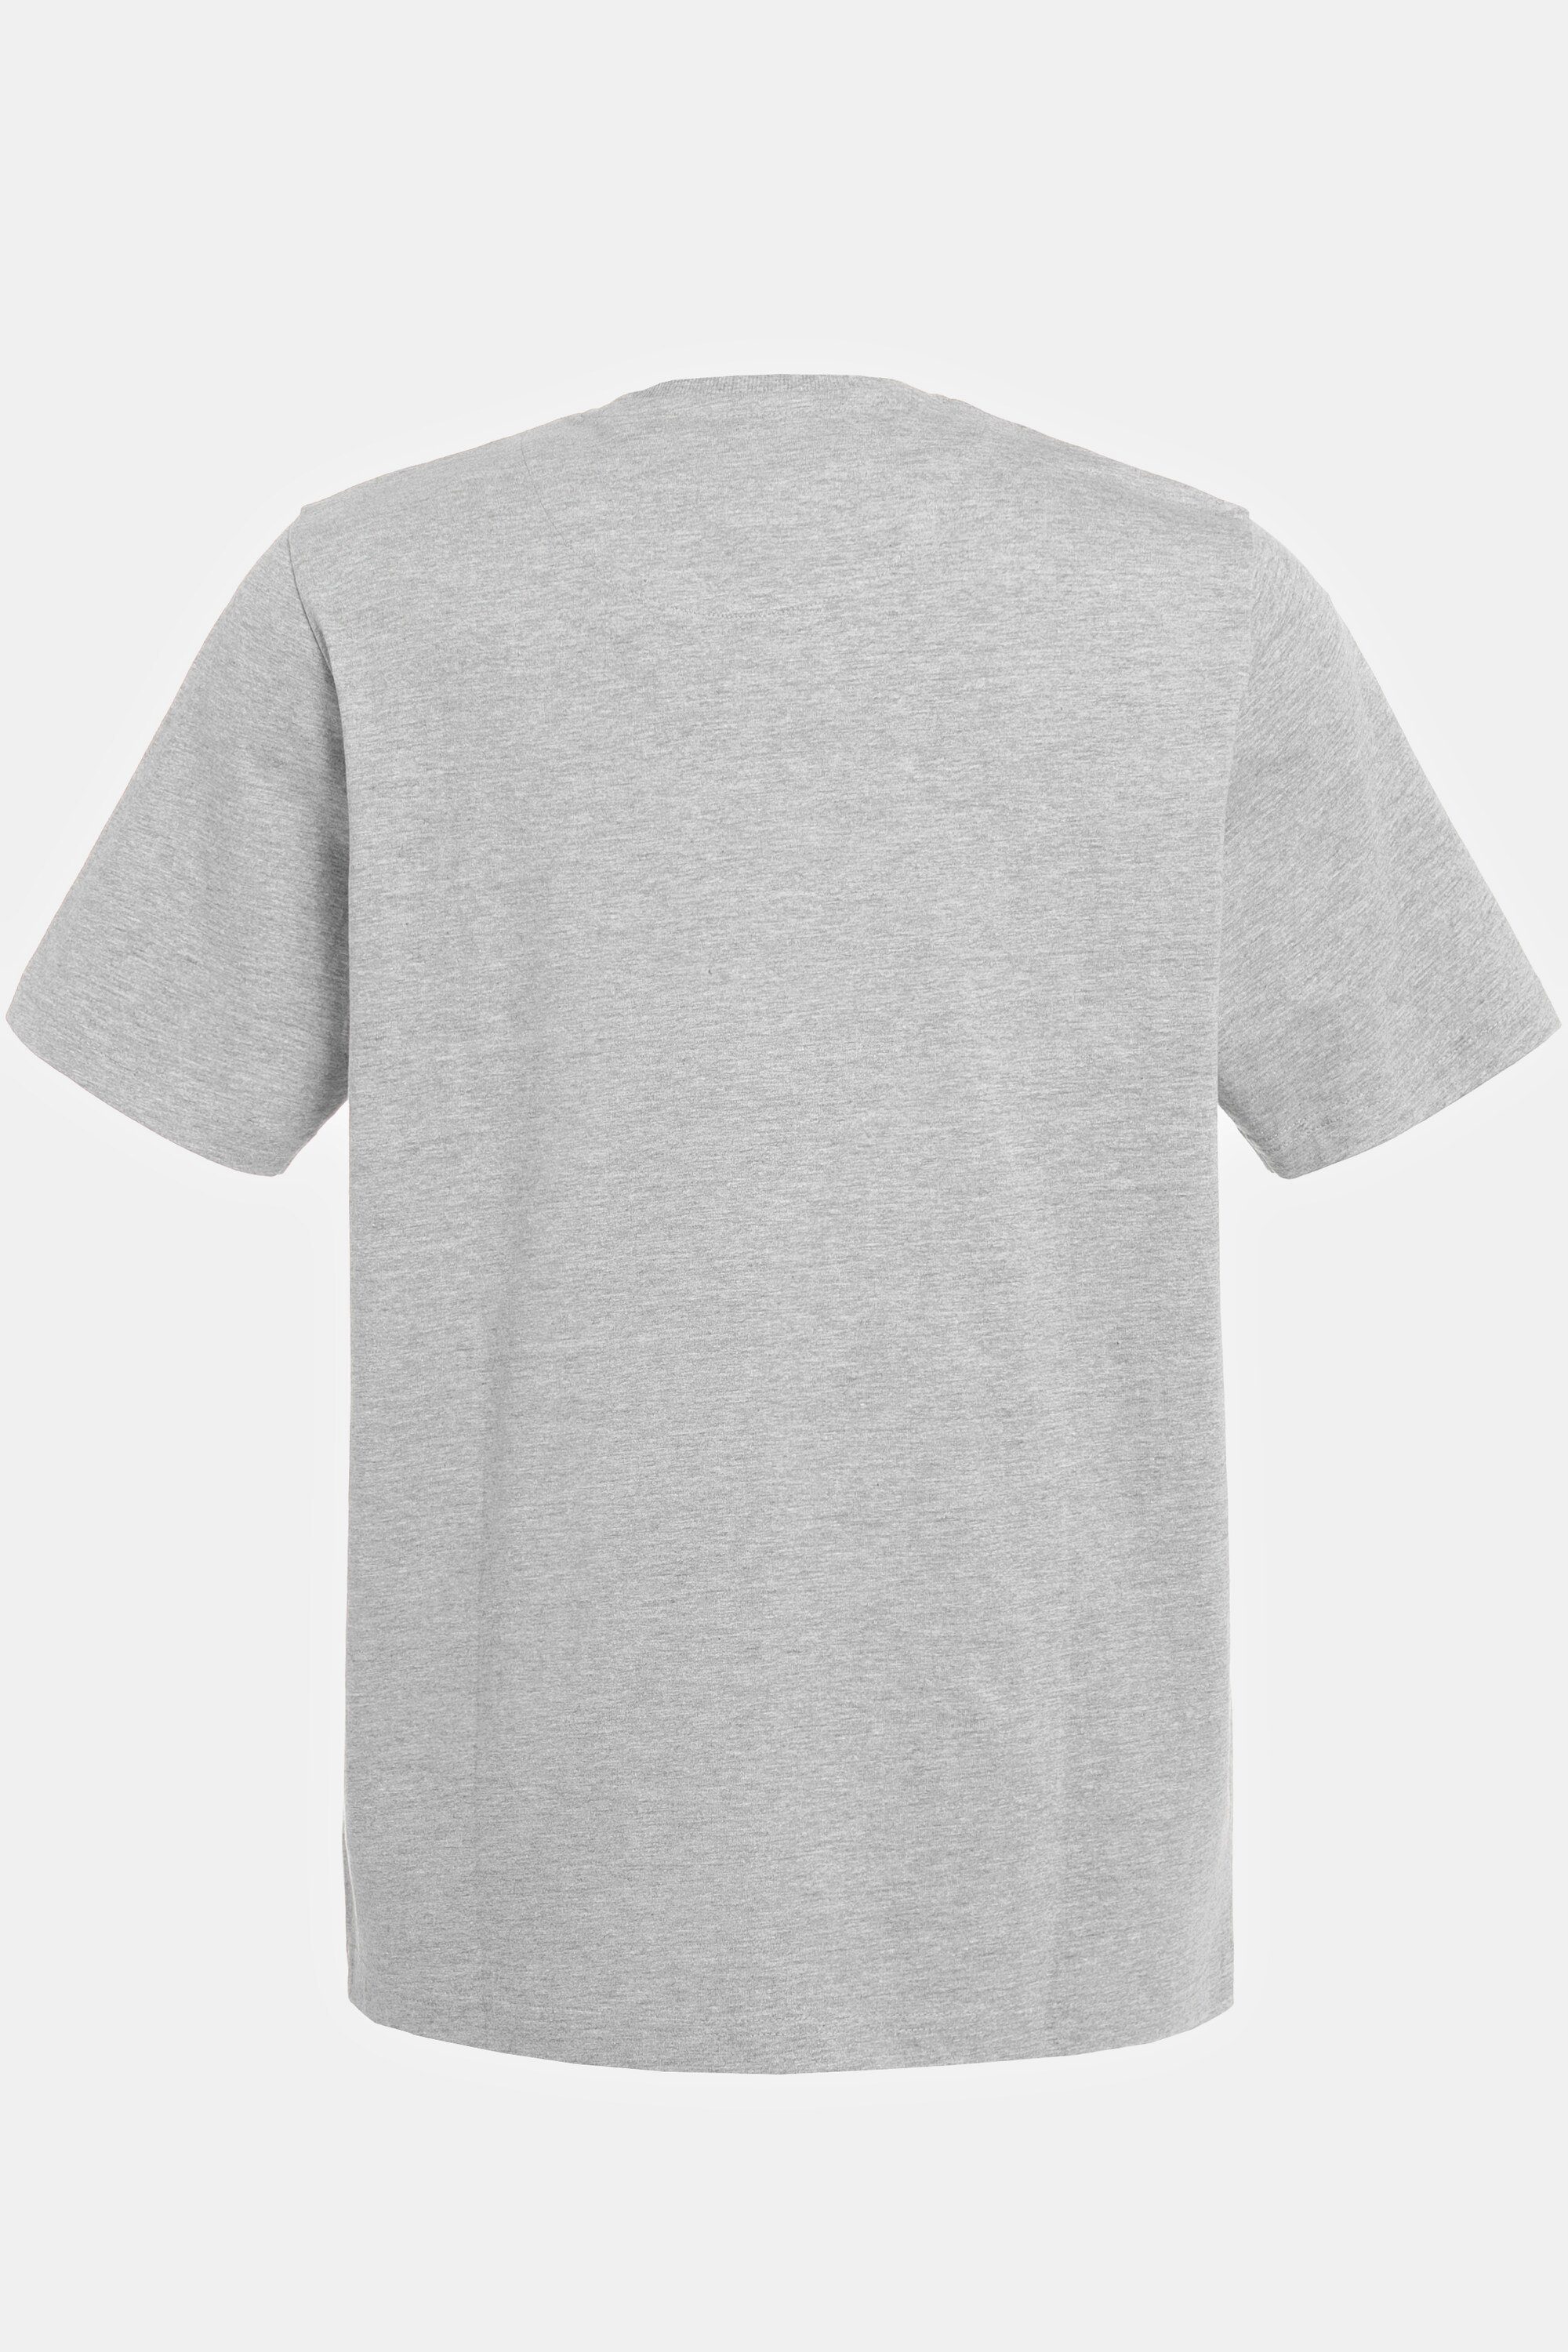 Halbarm JP1880 T-Shirt T-Shirt Print